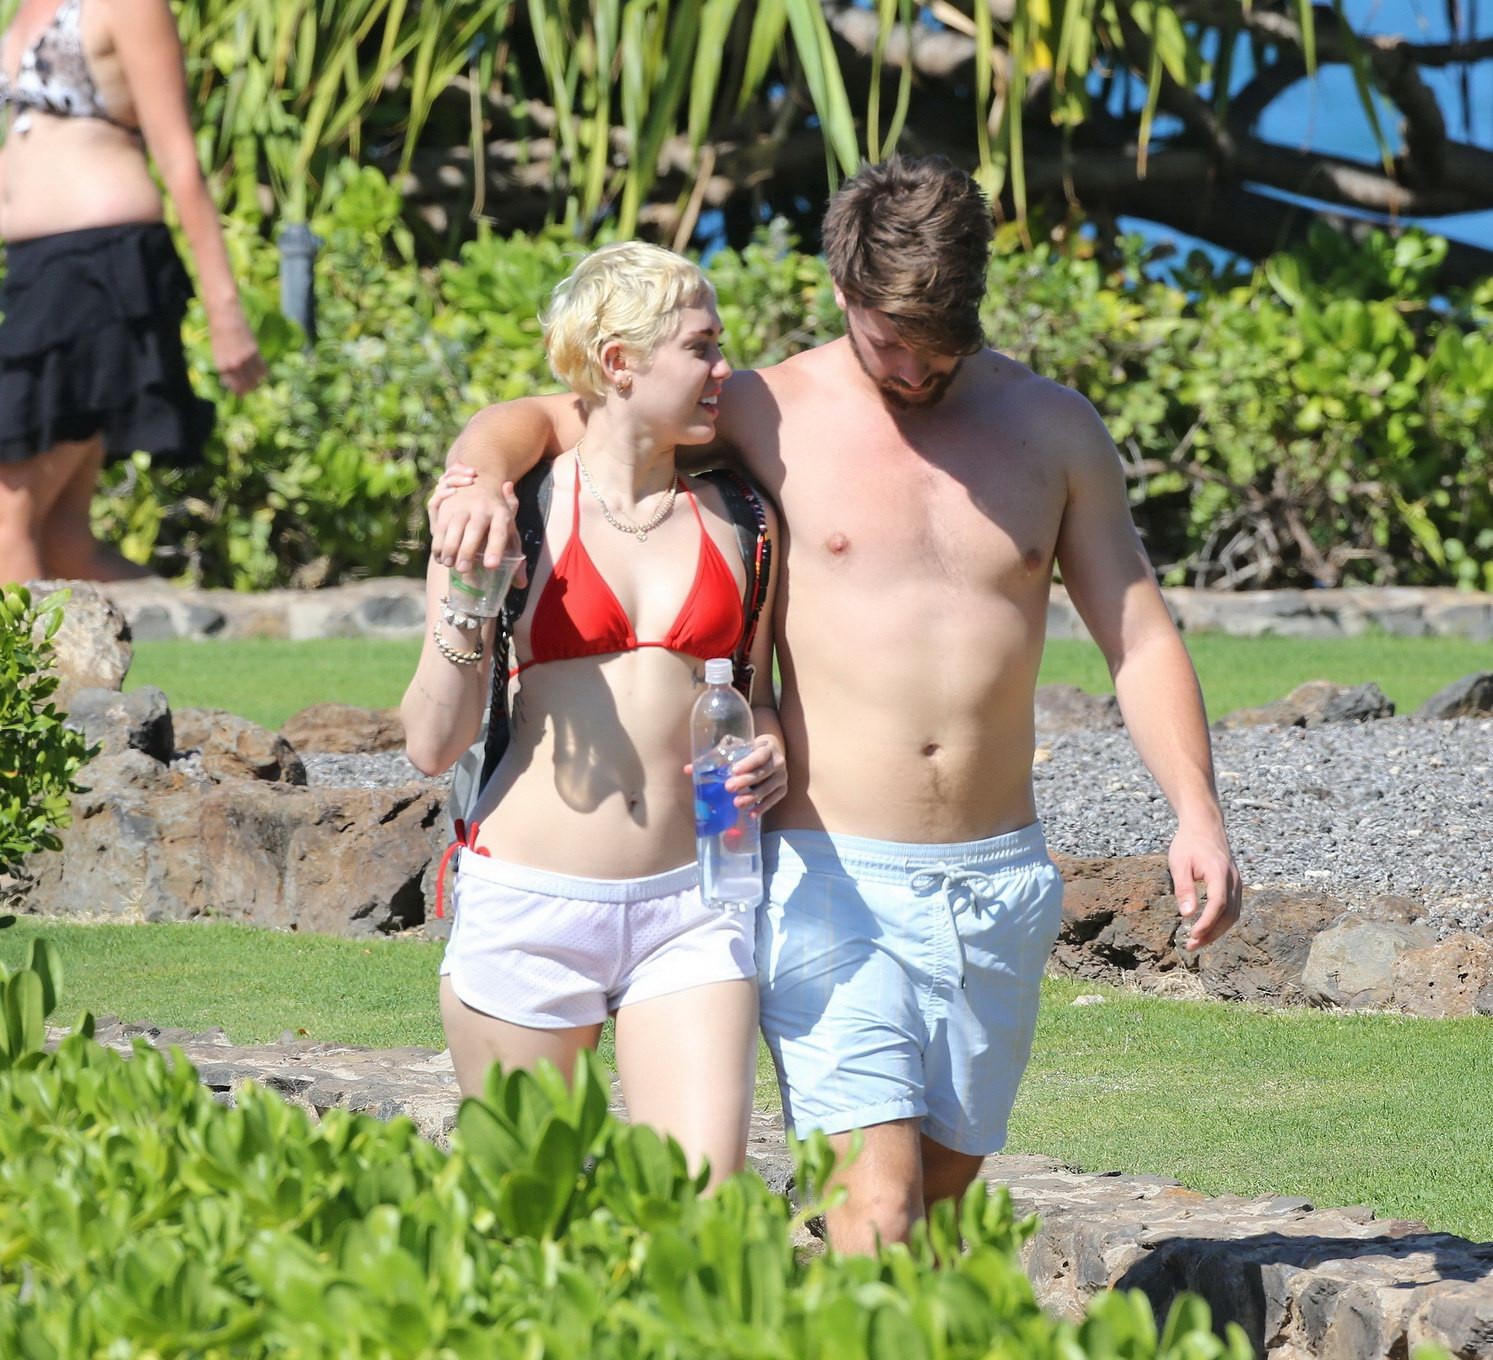 Miley cyrus con un diminuto bikini rojo y unos shorts transparentes en sus vacaciones en hawai
 #75175093